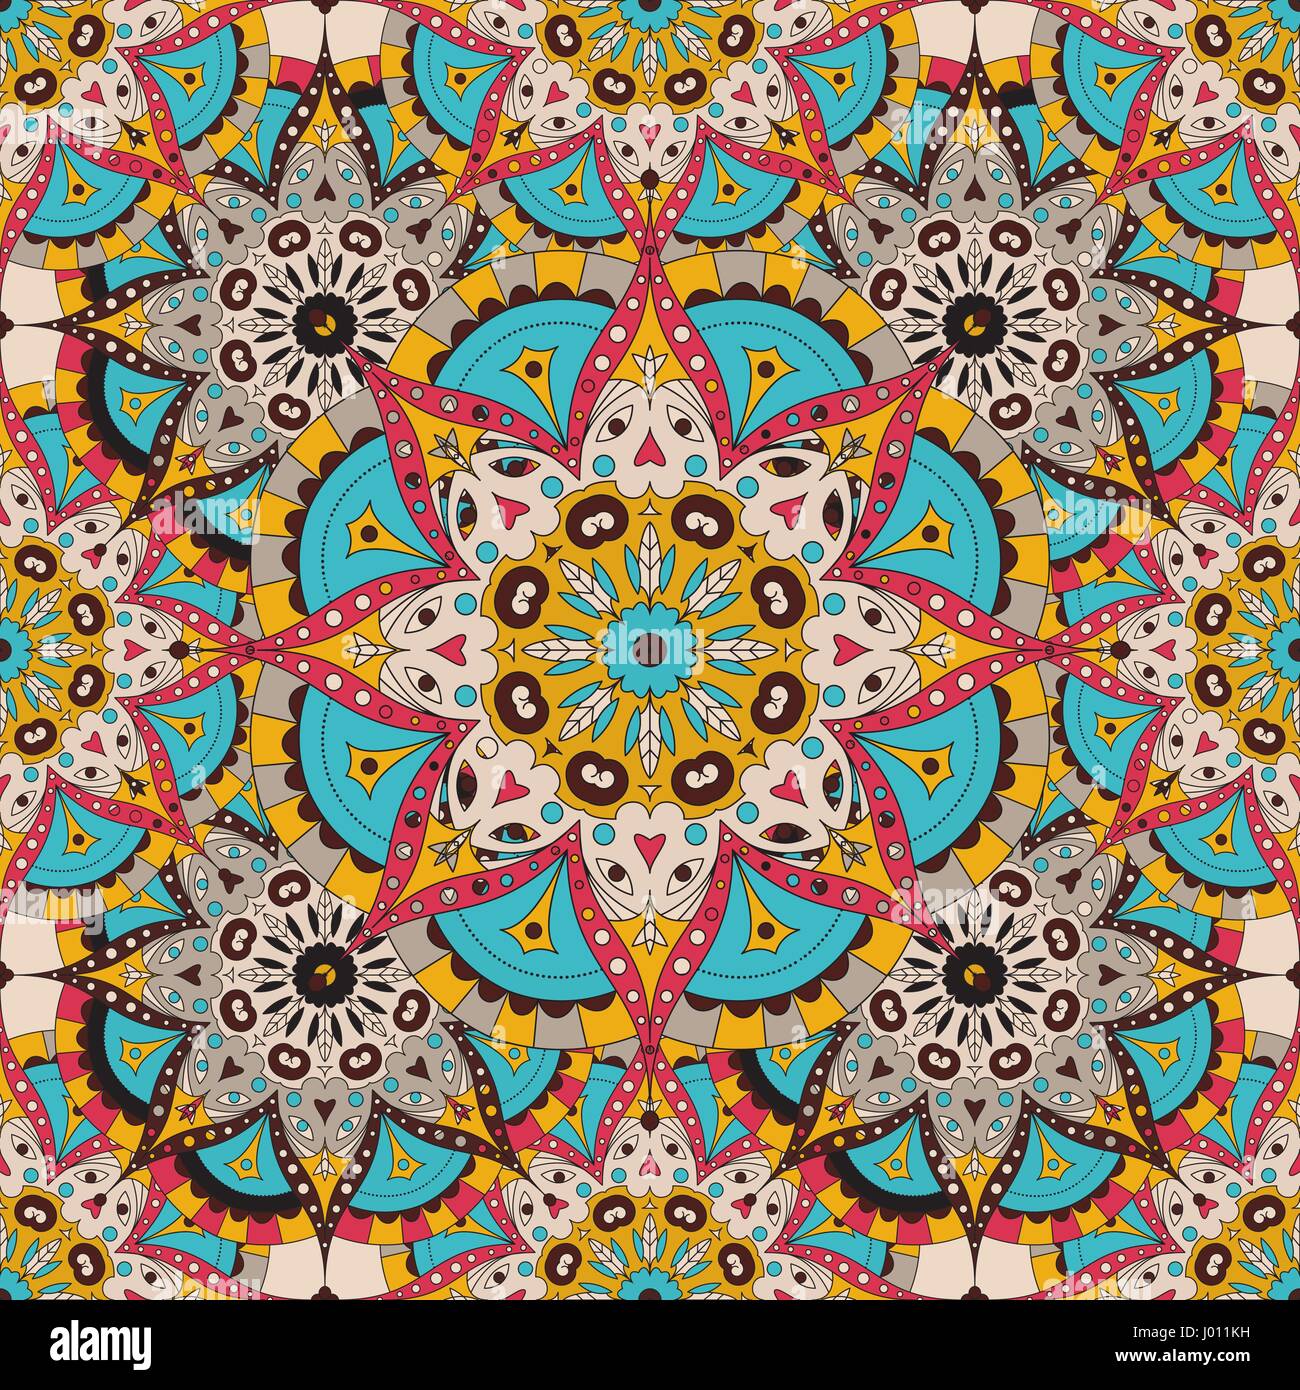 Vector seamless pattern. nazionale elemento decorativo per tessuto ot design. L'Islam, l'Arabo dei motivi. Oriental mandala colorati. Illustrazione Vettoriale